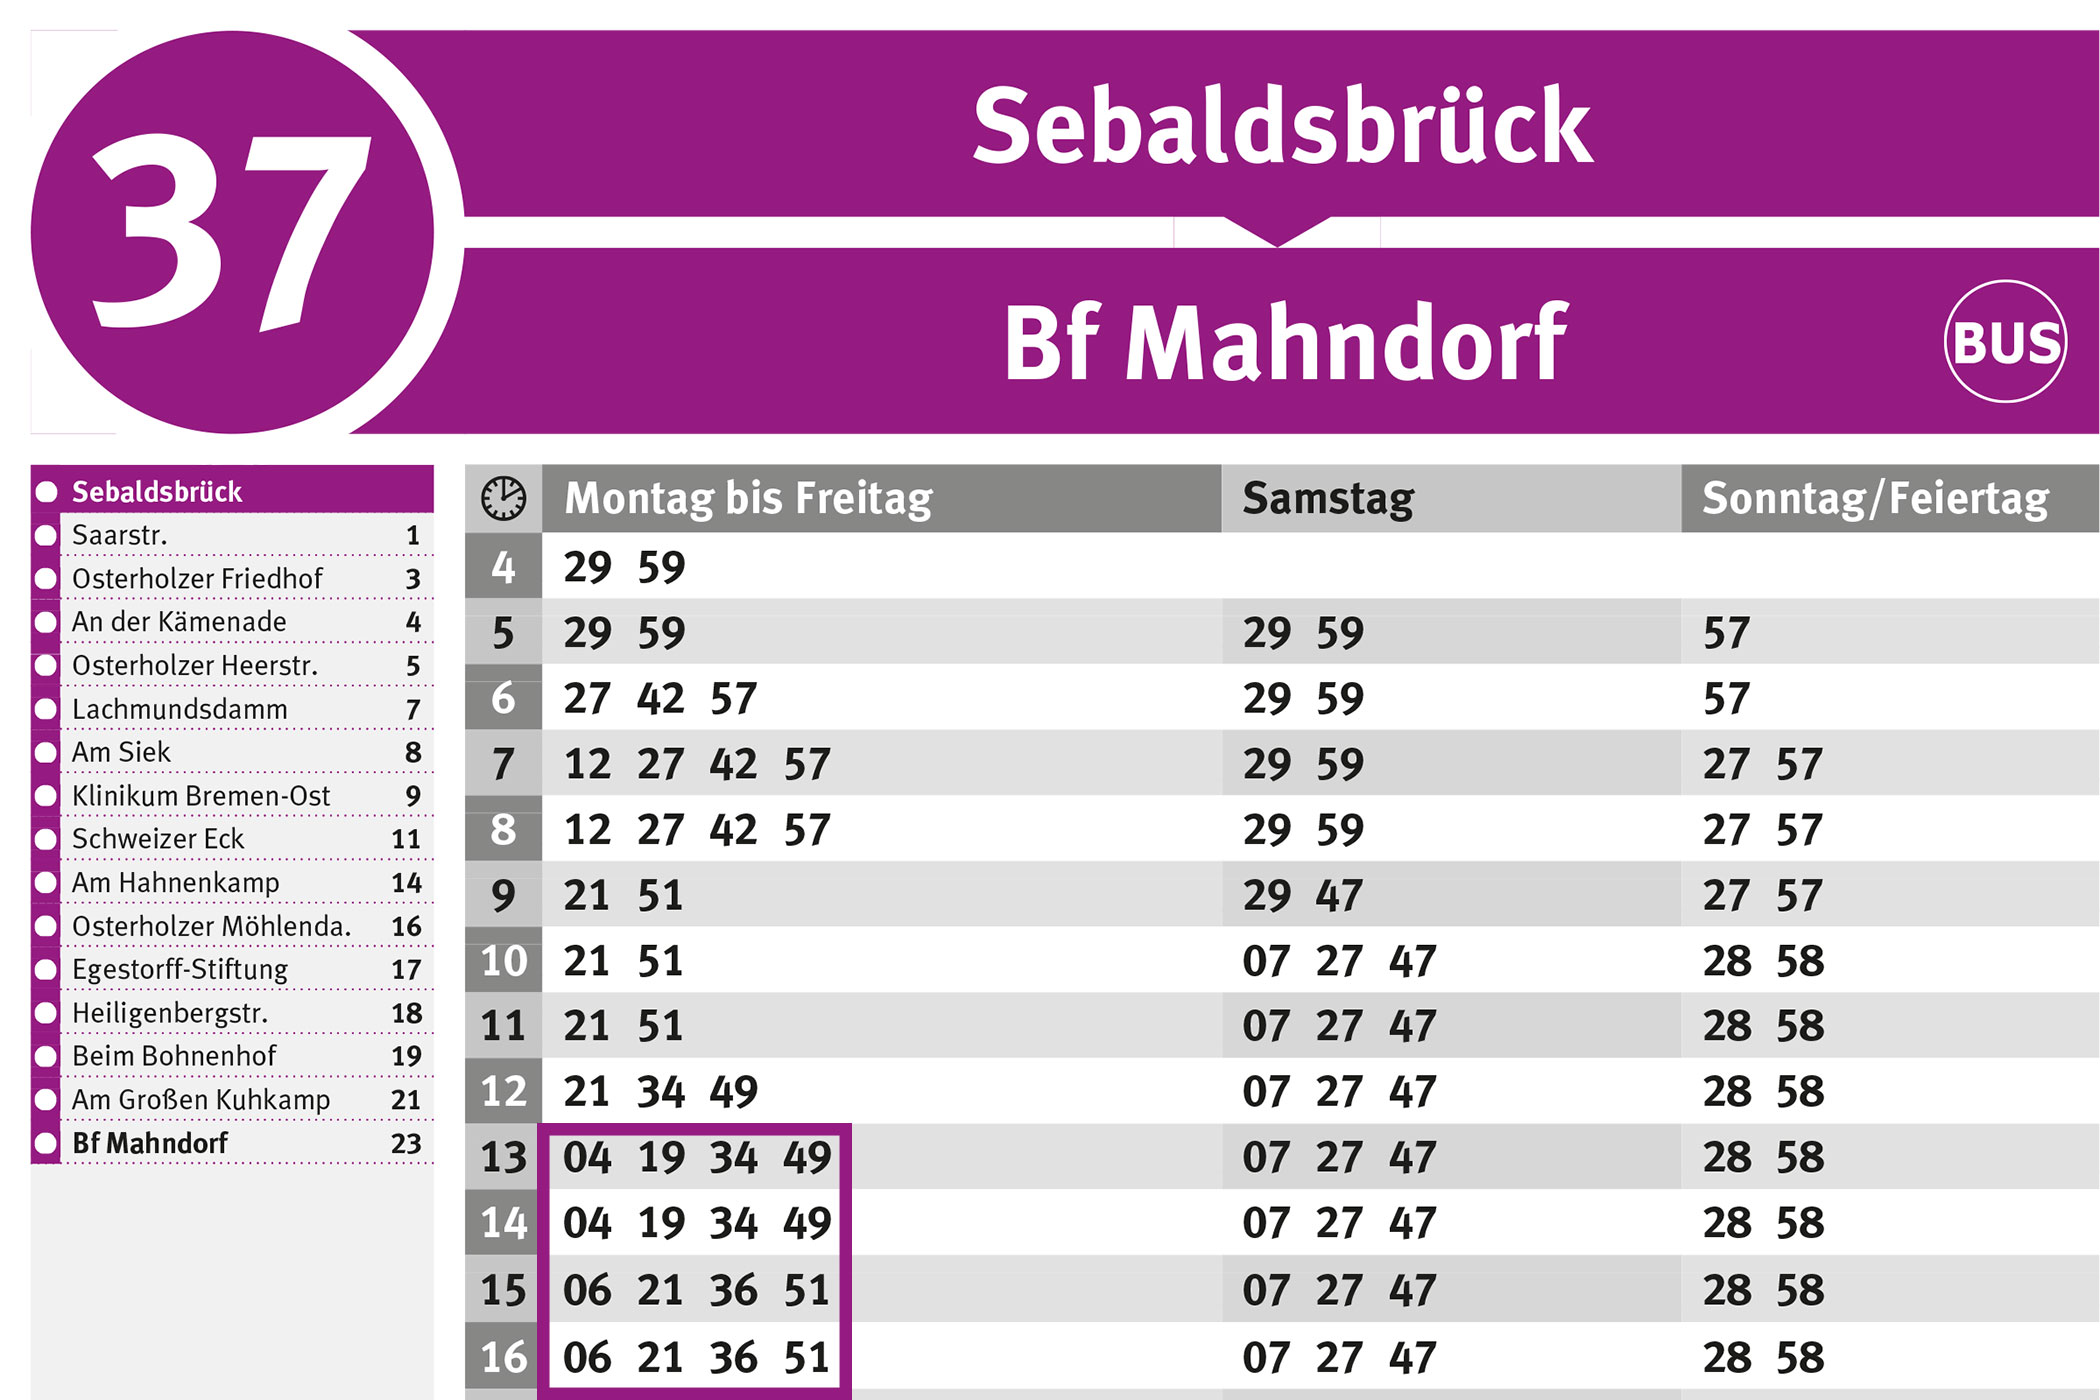 BSAG-Haltestellenfahrplan Sebaldsbrück Linie 37, gültig 2019/2020